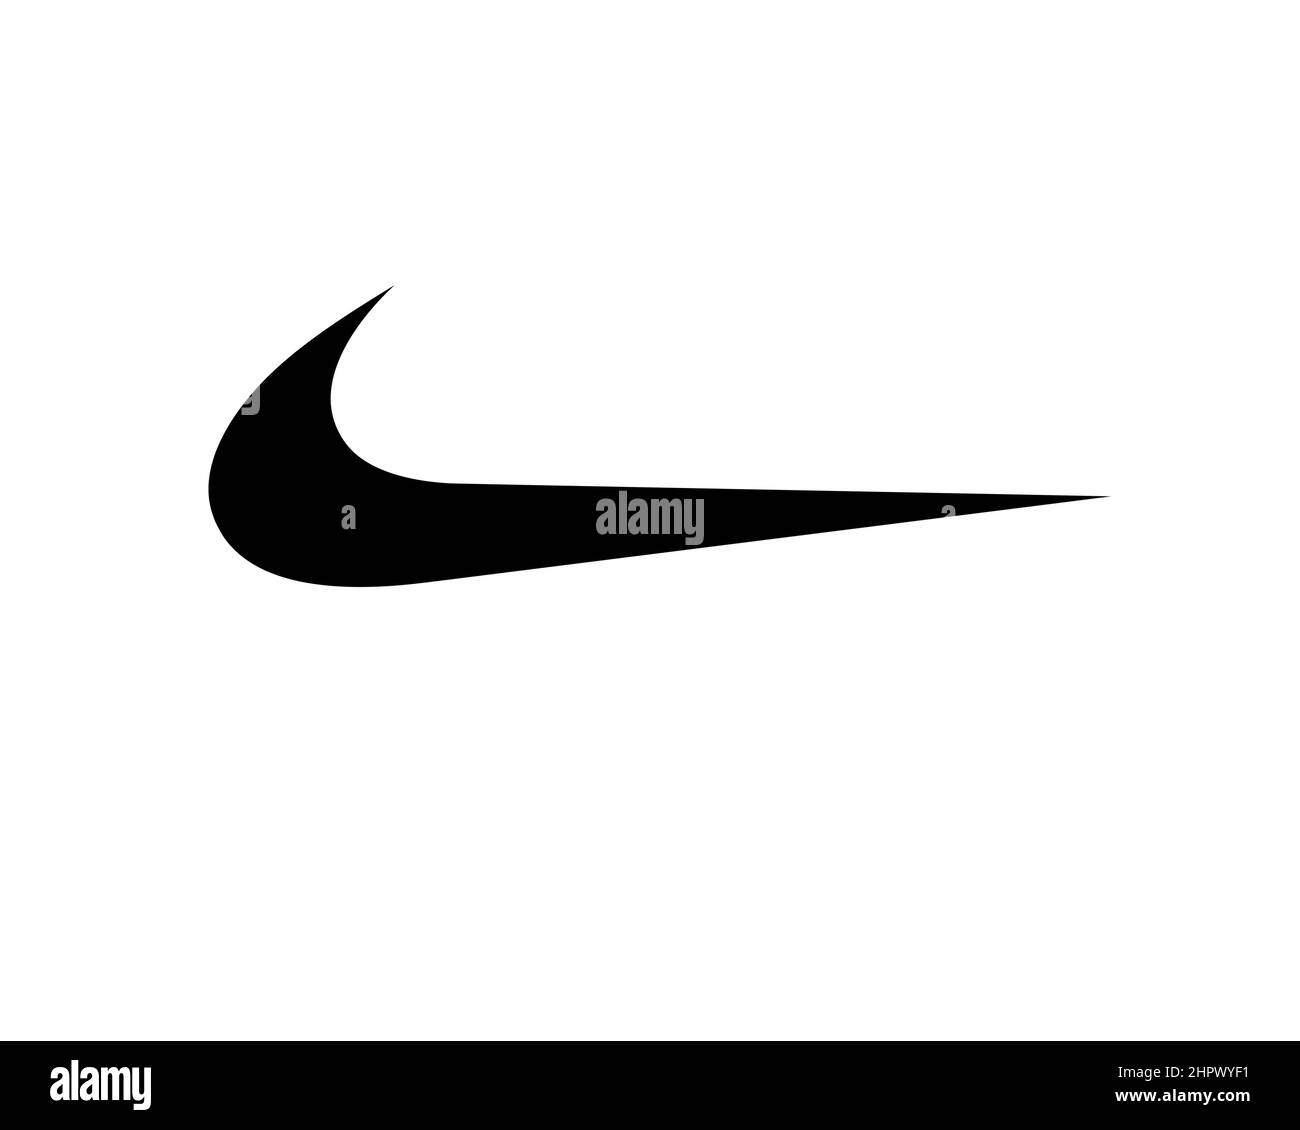 Nike trademark Banque d'images noir et blanc - Alamy